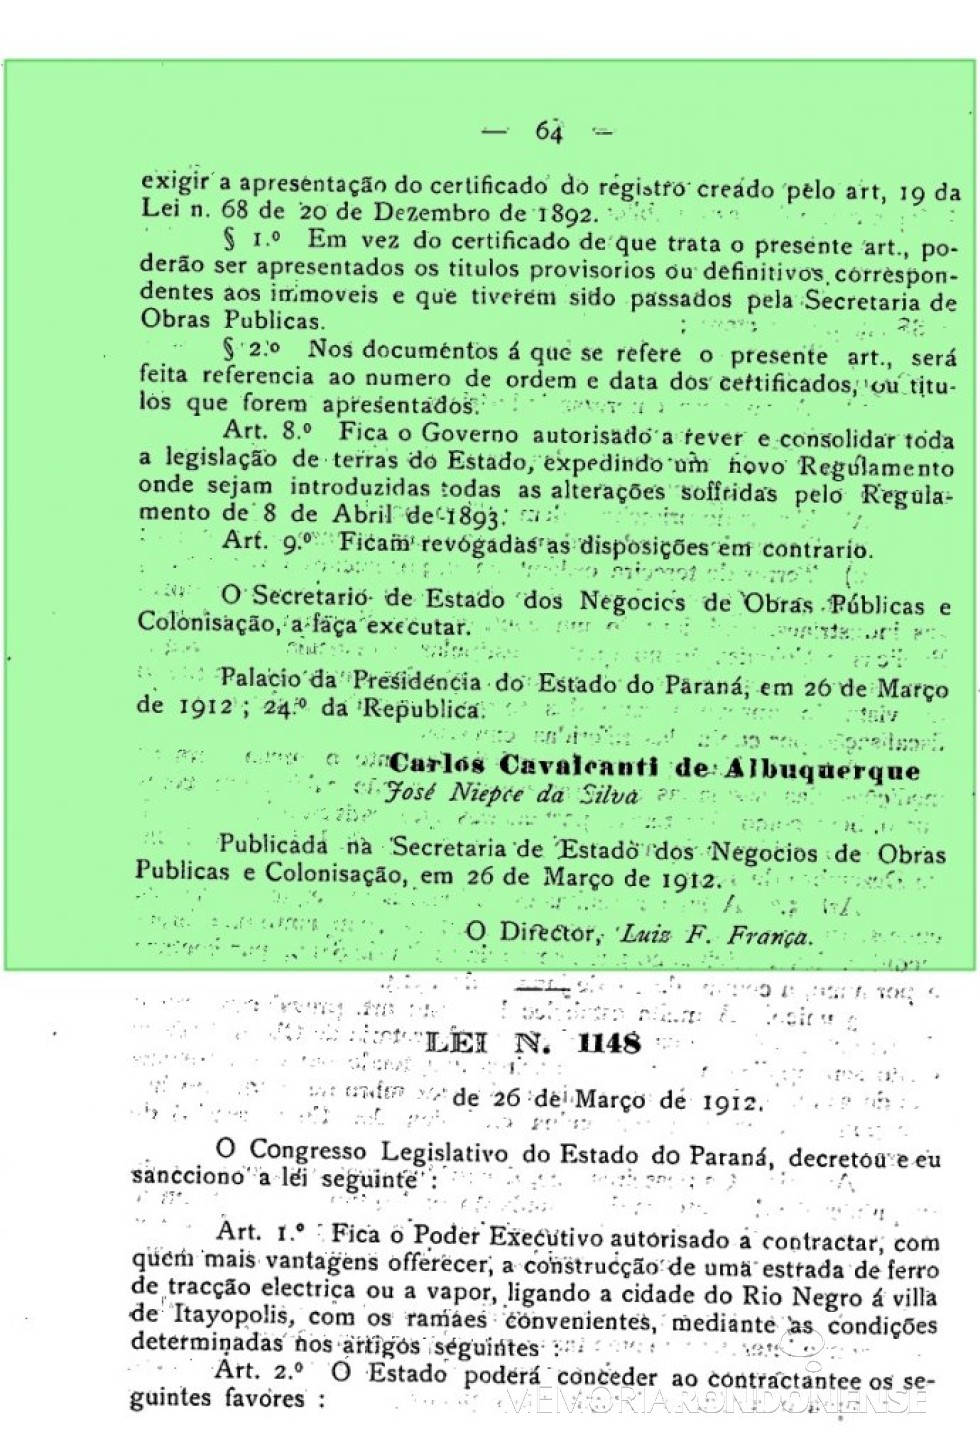 || Parte final da publicação da Lei nº 1.147 do Governo do Paraná, de março de 1912.
Imagem: Arquivo Público do Paraná - FOTO 3 - 